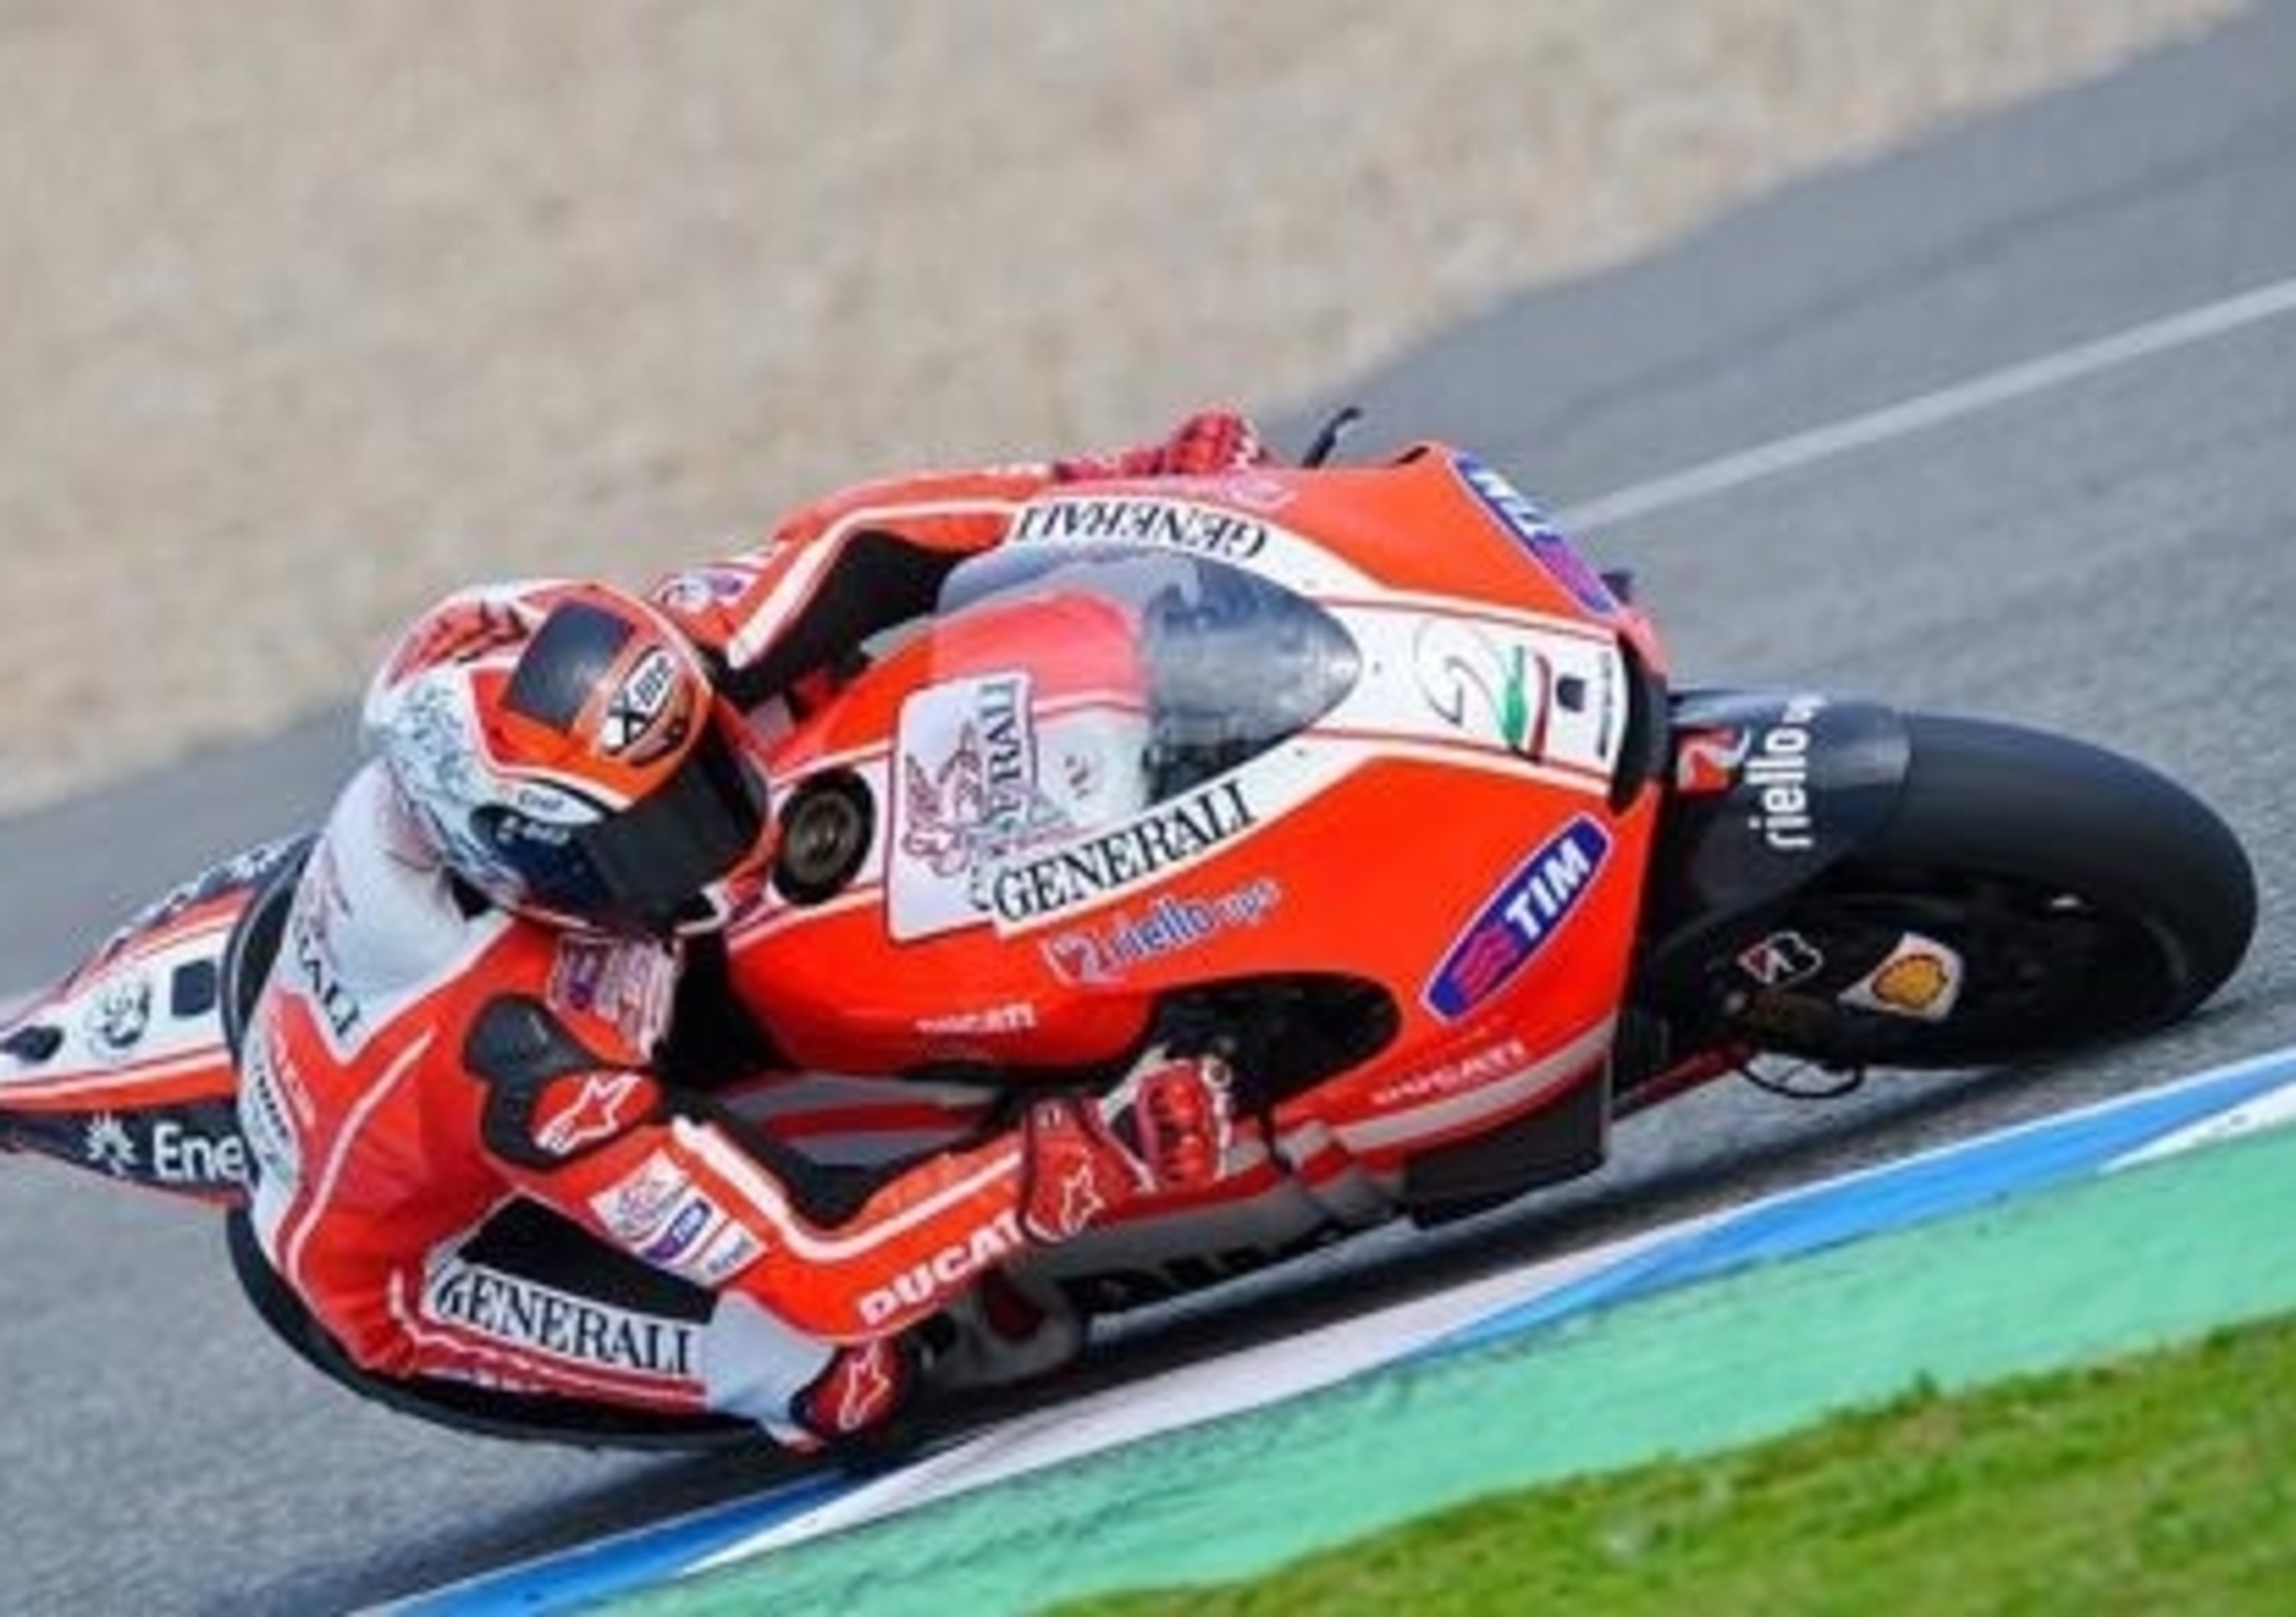 Ducati GP11. Finiti i test a Jerez